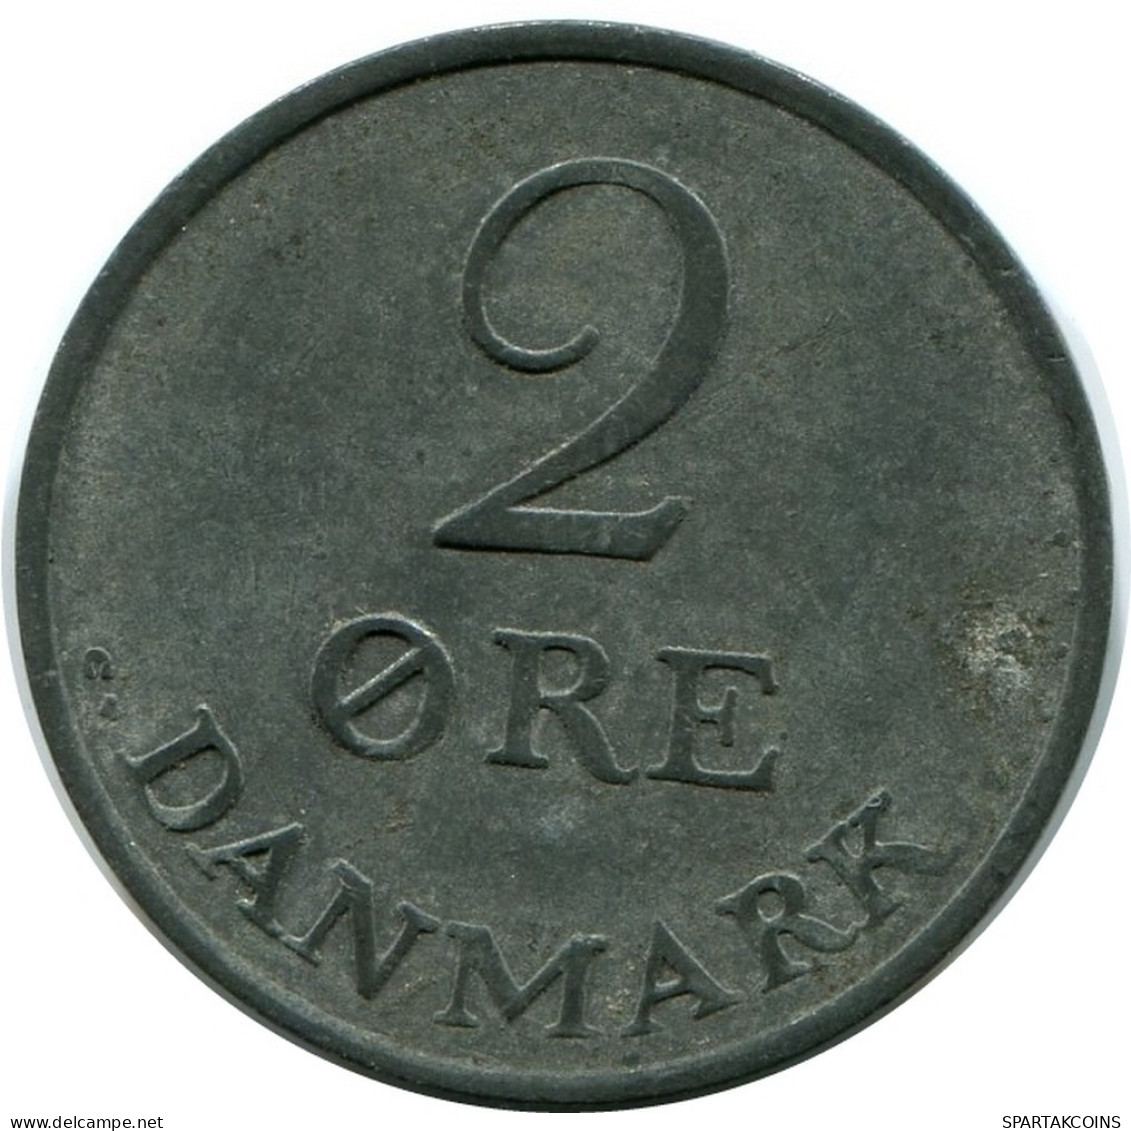 2 ORE 1967 DENMARK UNC Coin #M10397.U.A - Denmark